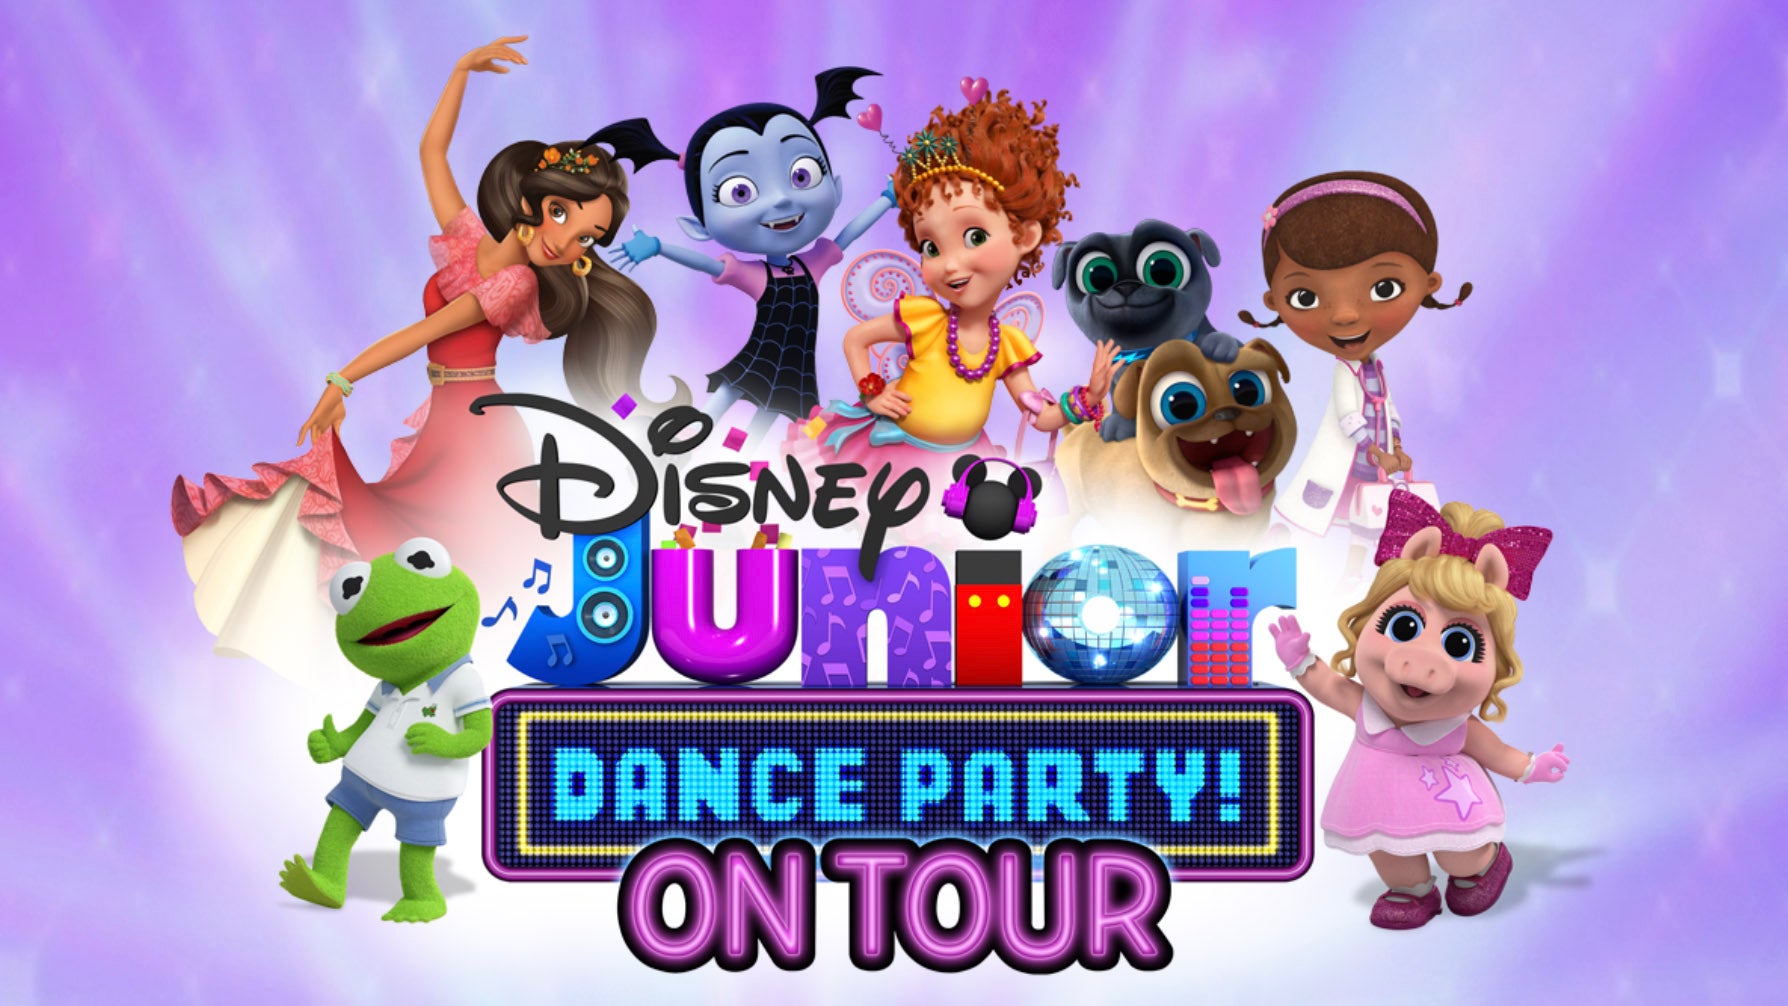 Disney Junior Dance Party On Tour